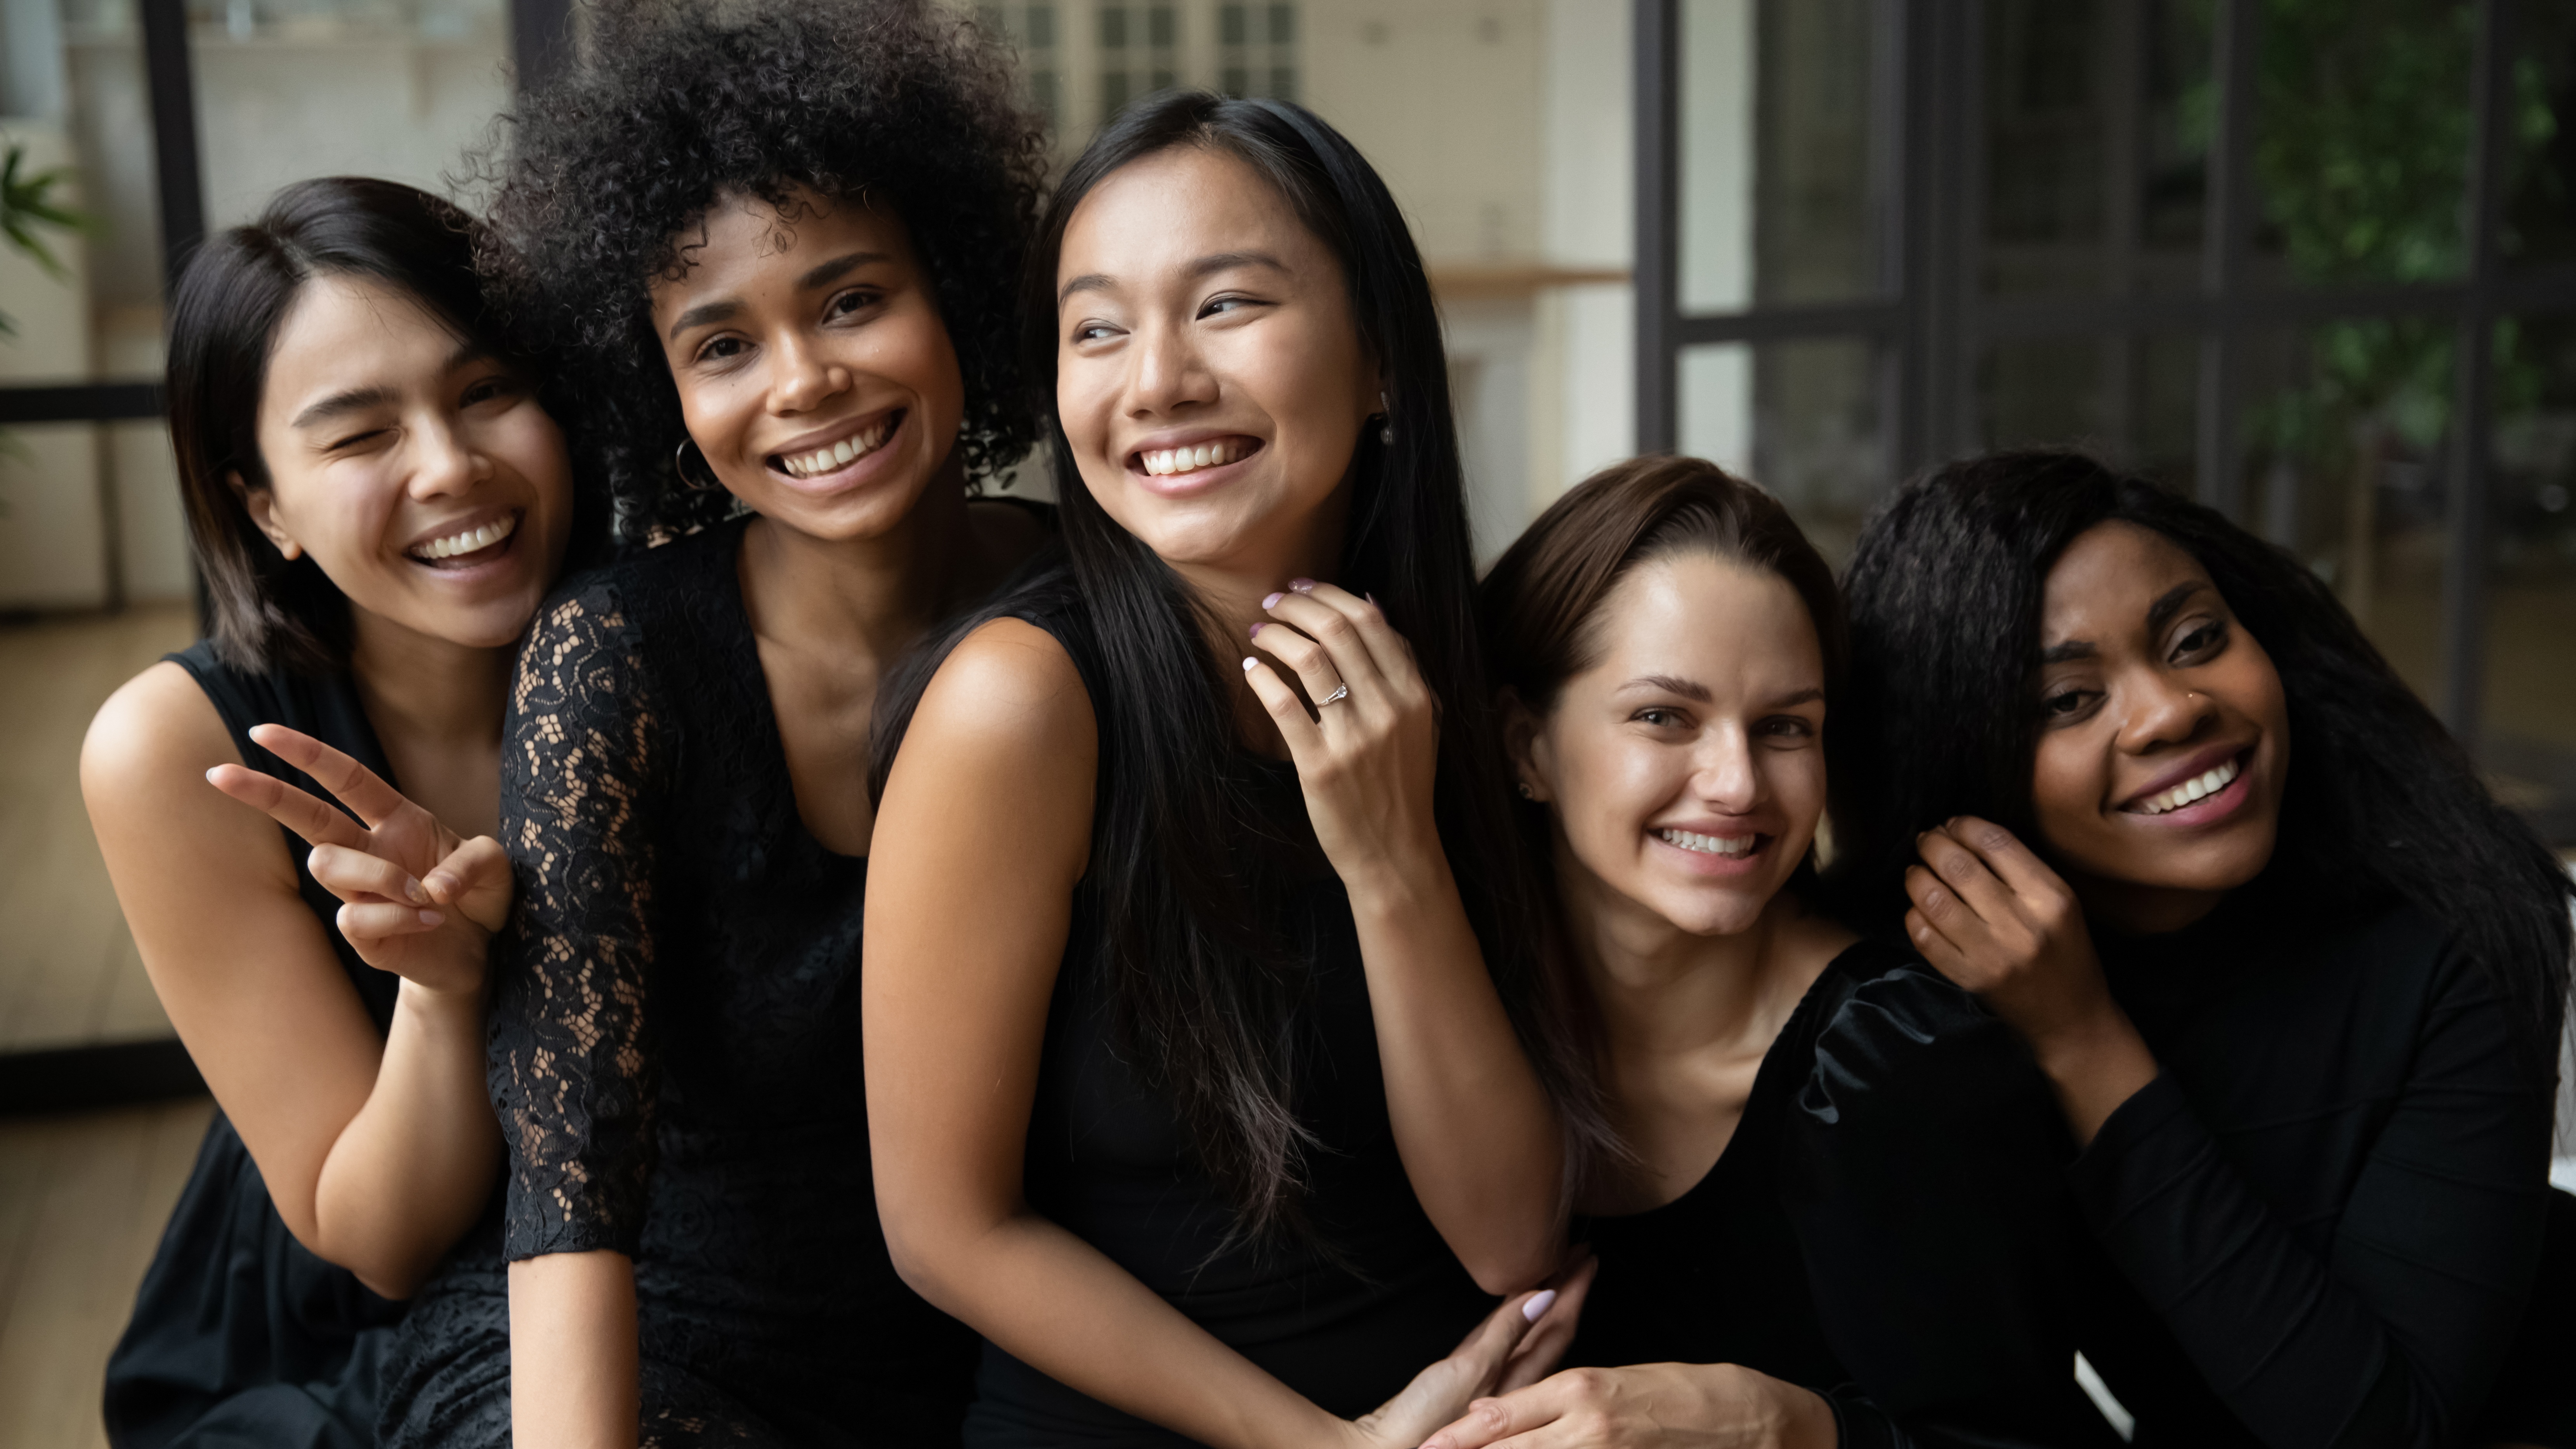 Mujeres vestidas de negro sonriendo | Fuente: Shutterstock